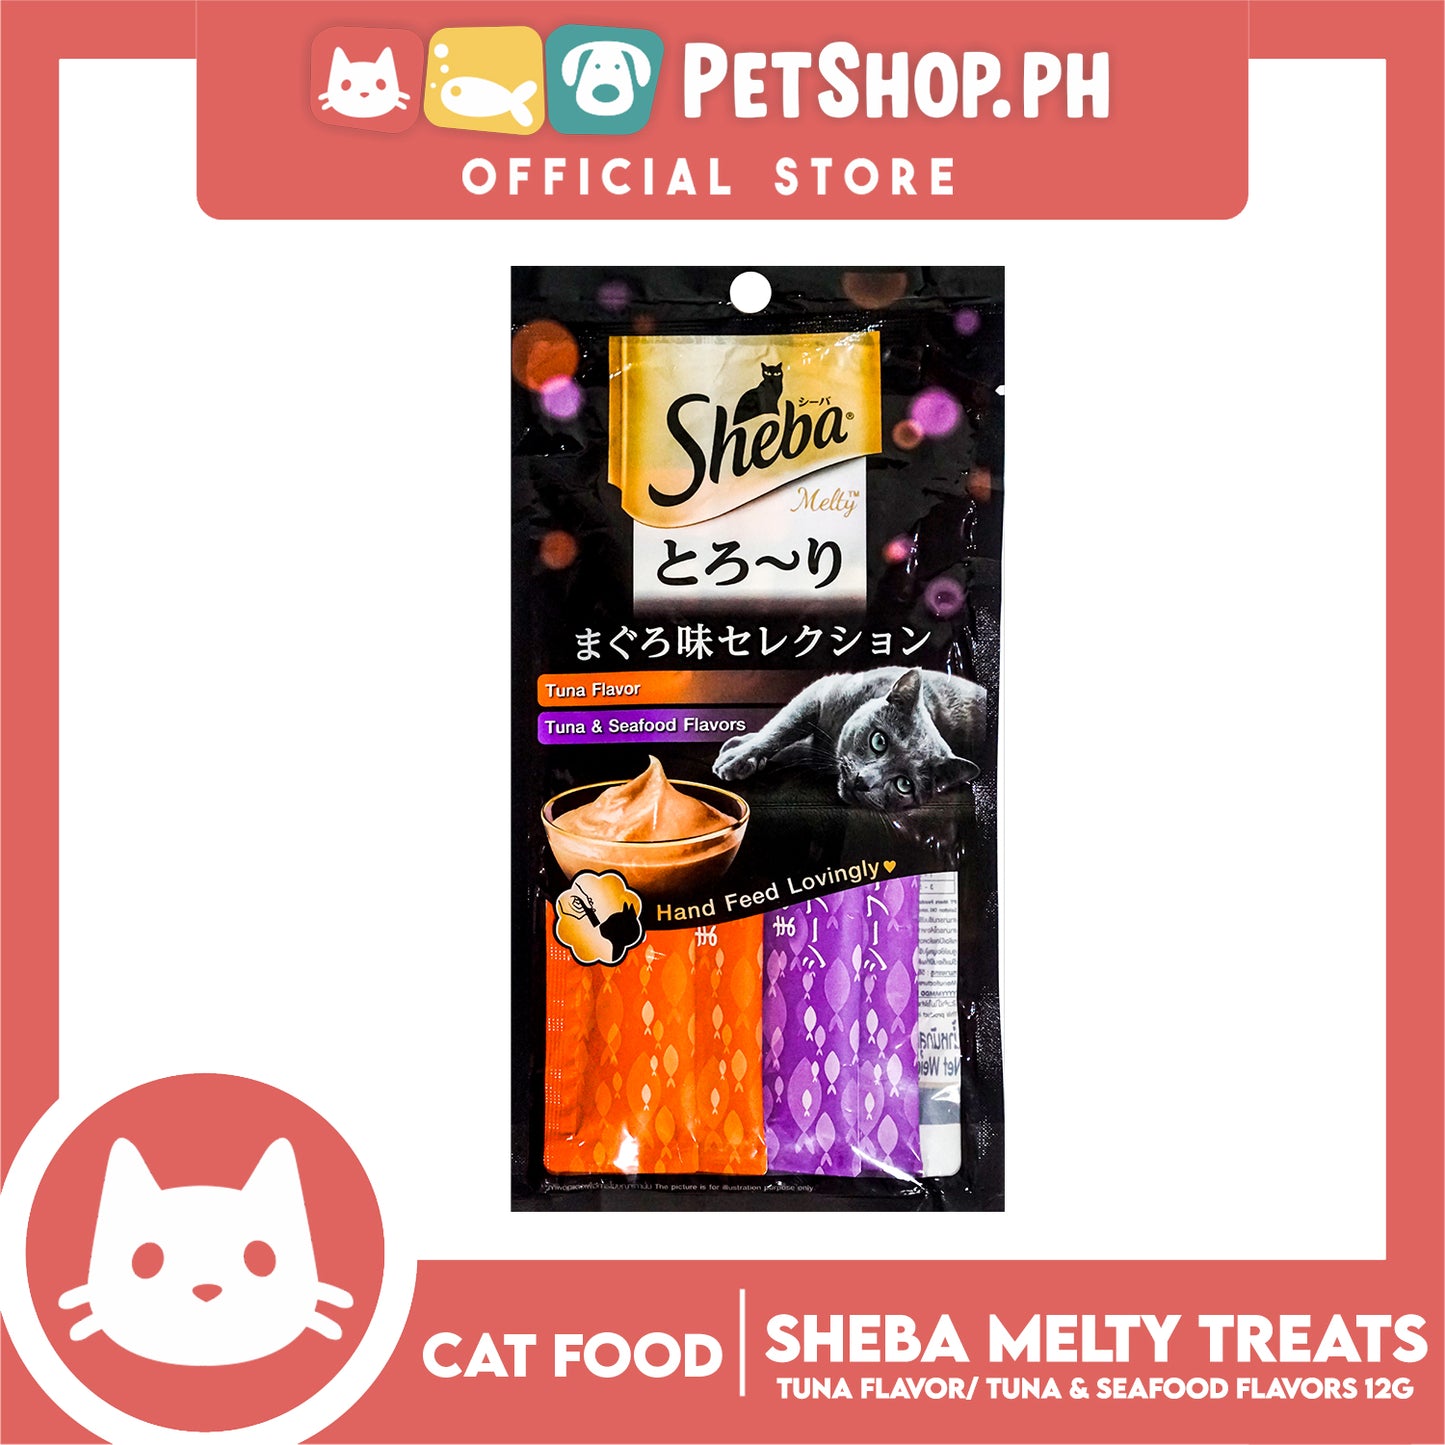 12pcs Sheba Melty Tuna Seafood Flavors Hand Feed Lovingly 12g x 48 sachets Cat Treats